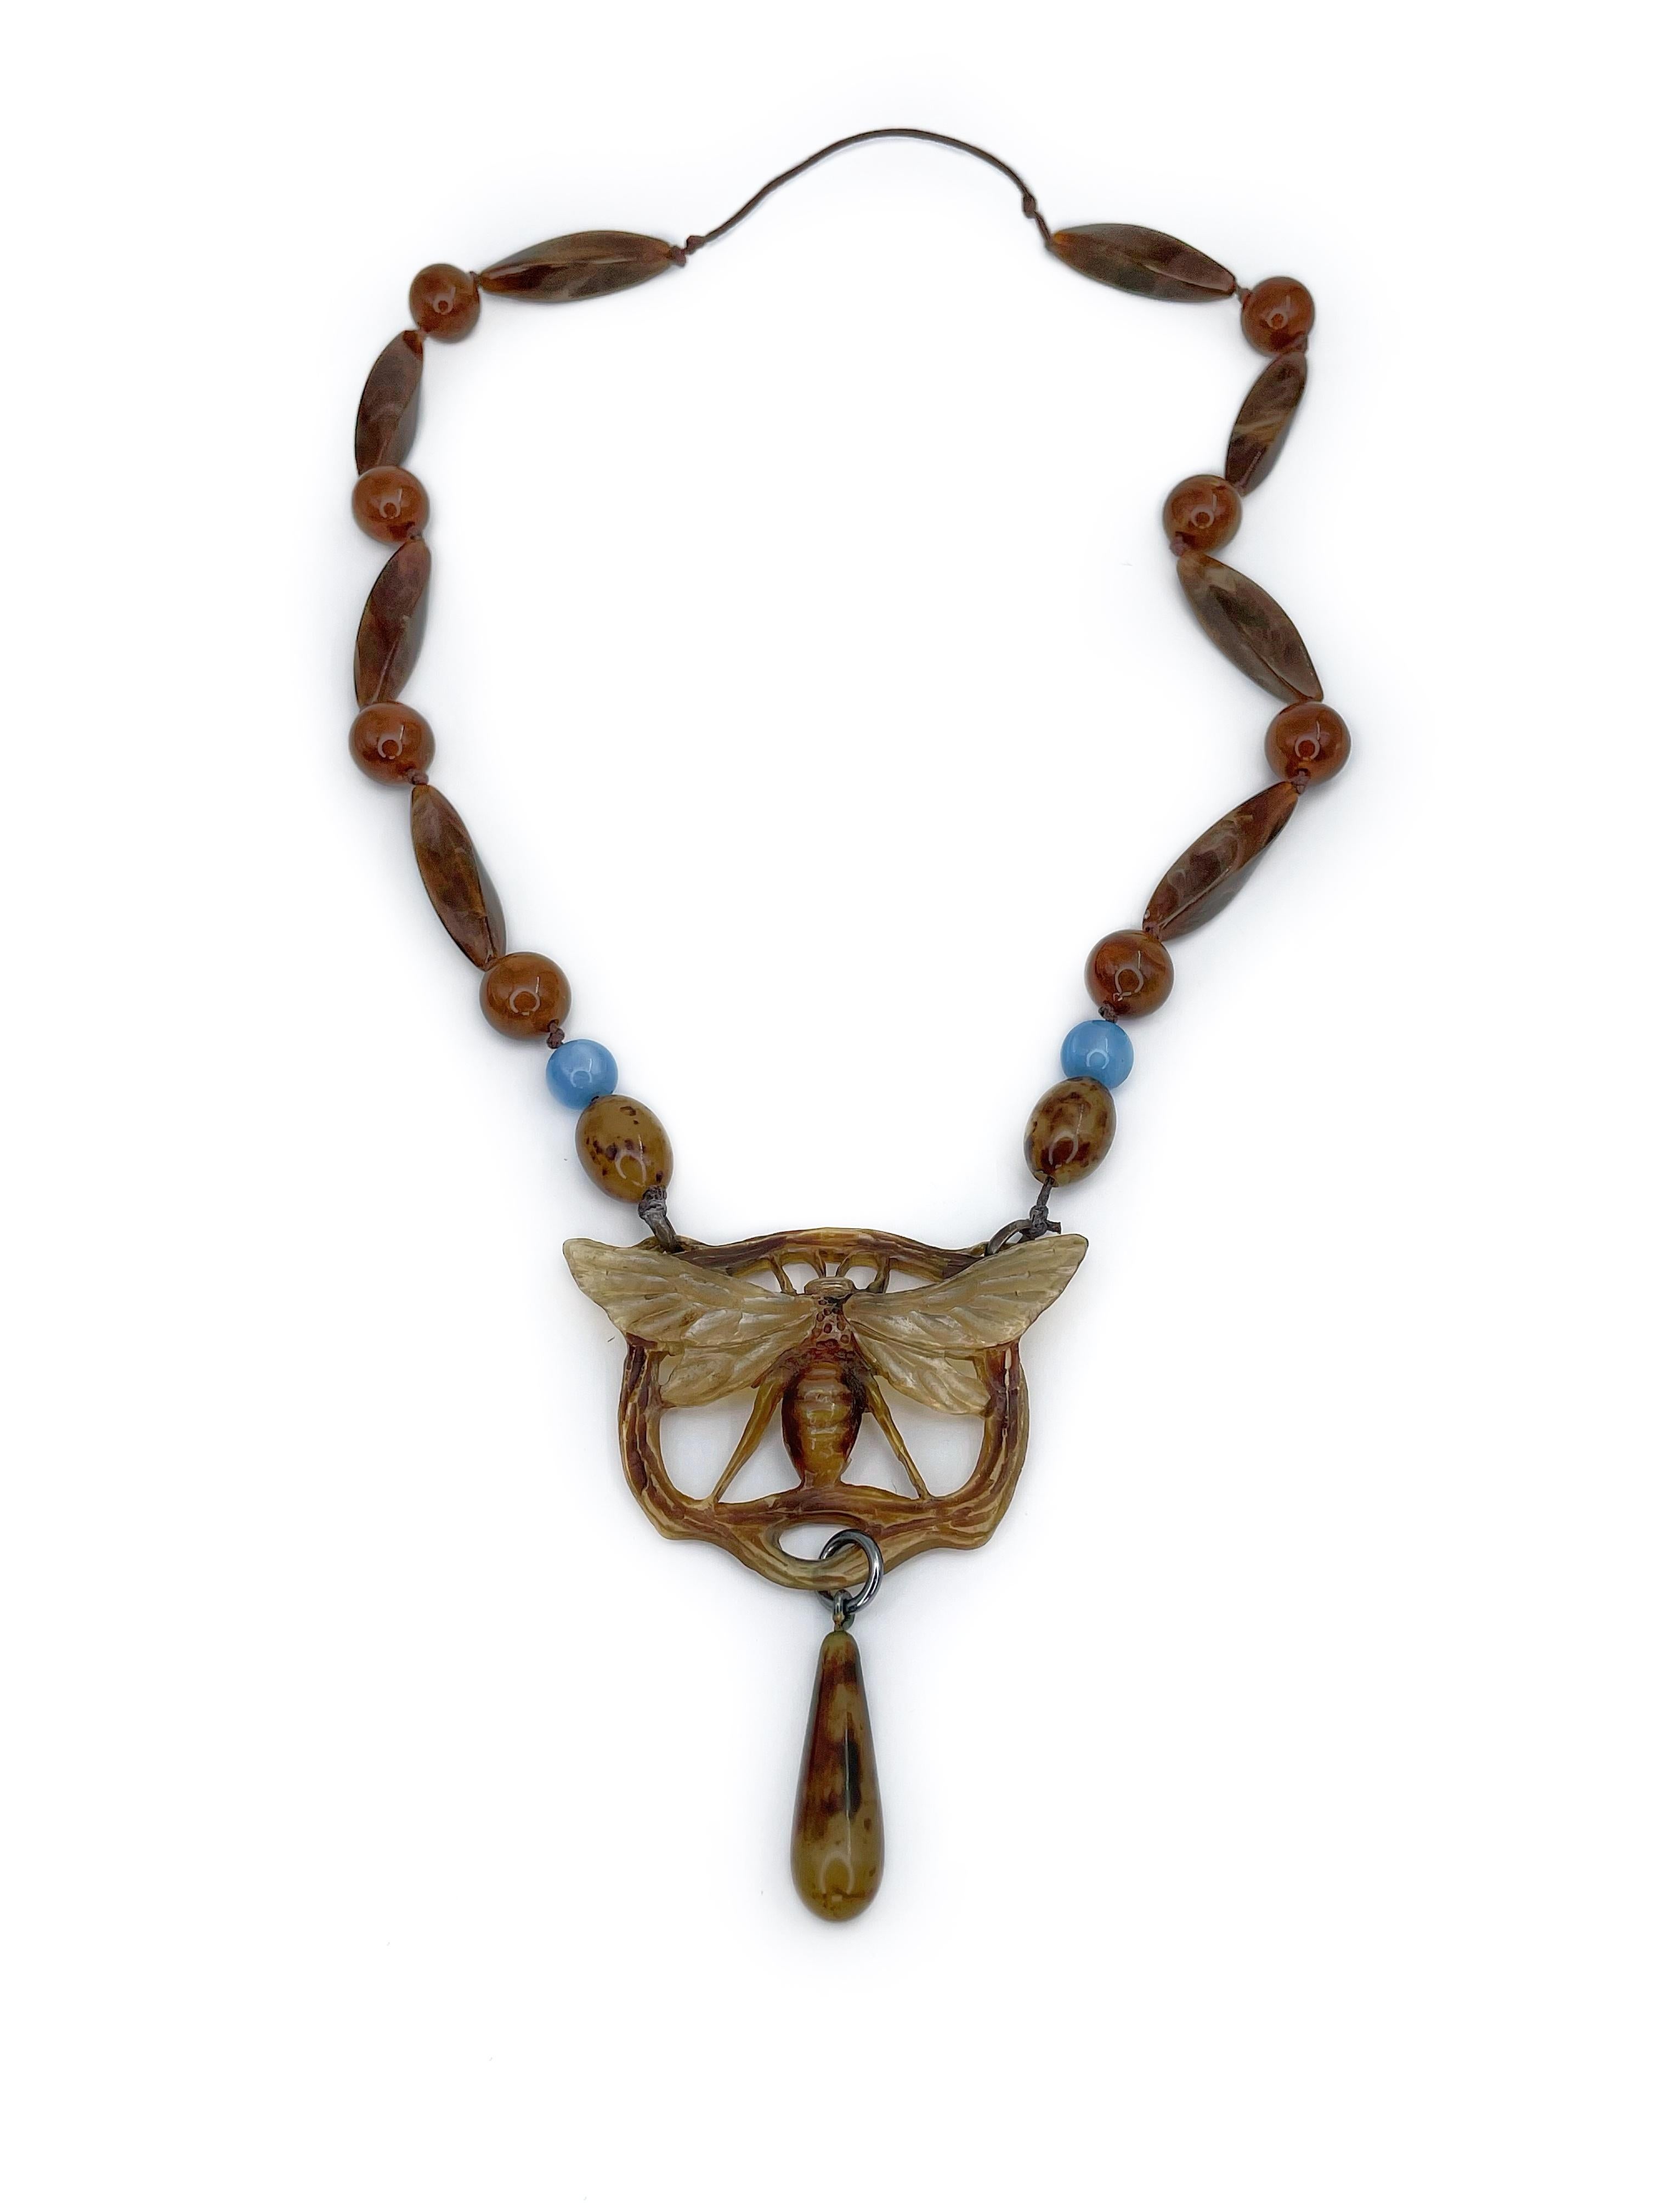 Il s'agit d'un exceptionnel collier de perles à pendentifs en forme d'insectes de style Art nouveau, conçu par Georges Pierre. Cette pièce comporte des perles en bakélite et un insecte étonnamment sculpté à la main. 

Signé : GIP

Poids : 14,28